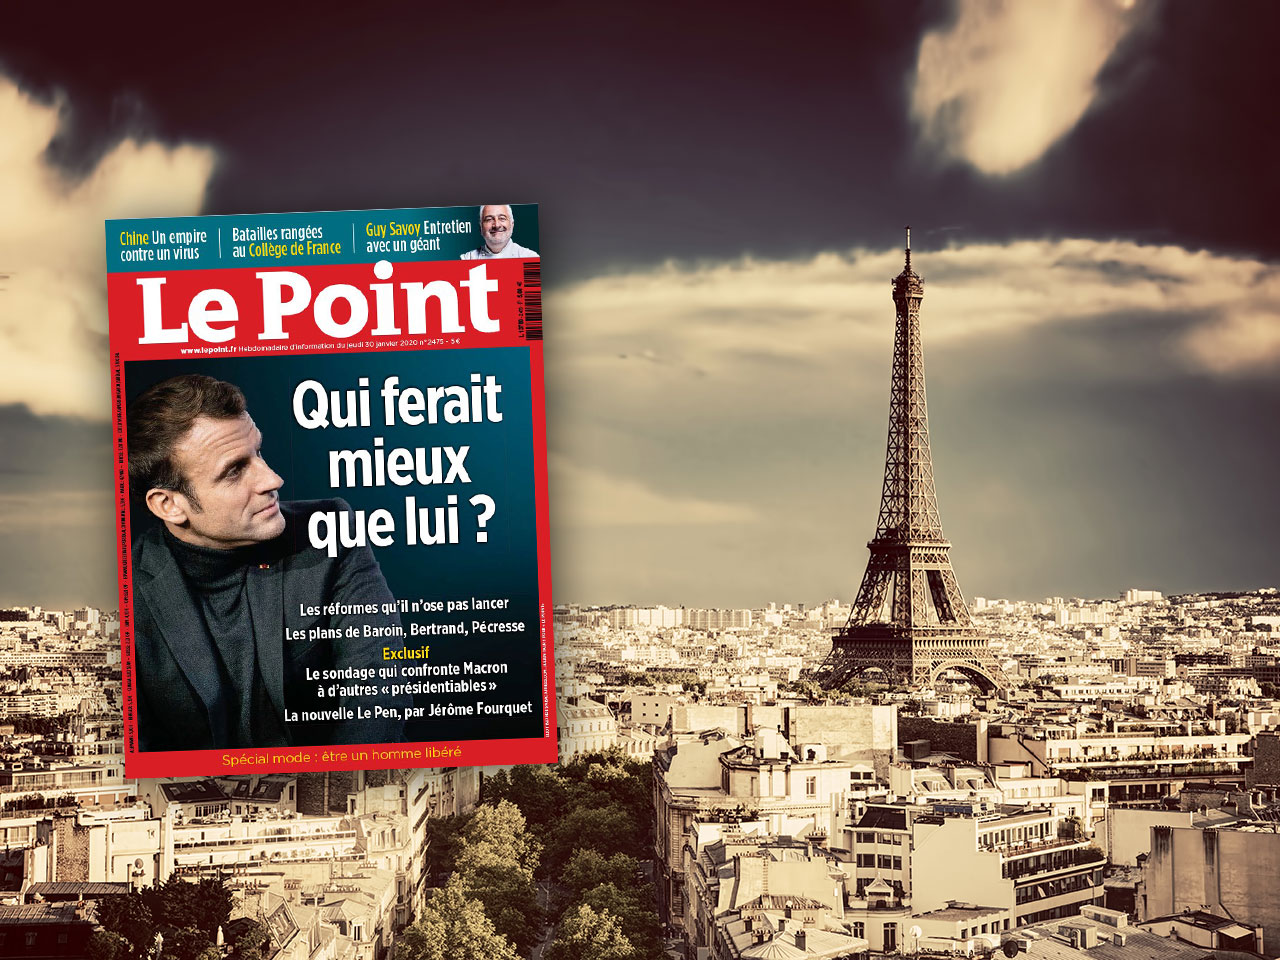 Tilaa Le Point lehti tarjoushintaan